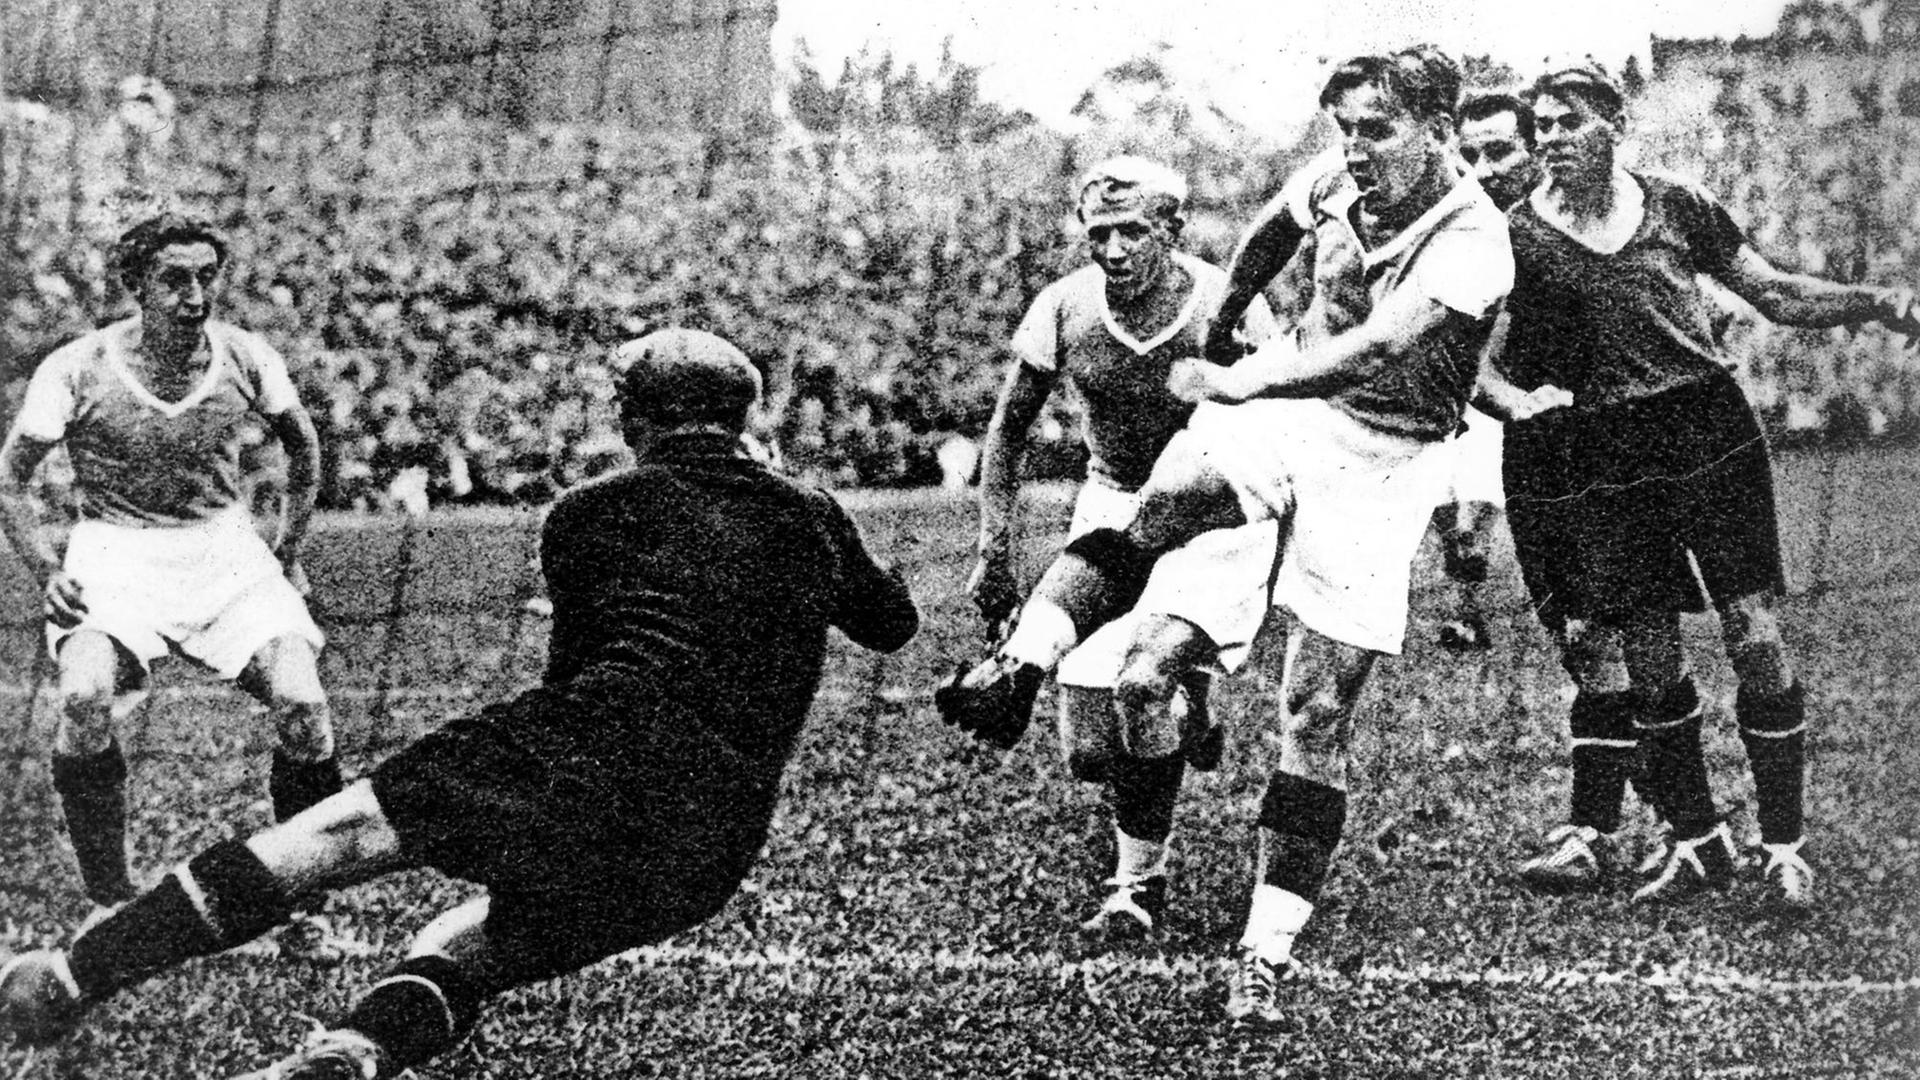 Ernst Kuzorra schießt aus zwei Metern Entfernung den Ball auf das Nürnberger Tor - allerdings vergeblich: Torwart Köhl hält! Trotzdem - der FC Schalke 04 gewinnt das Endspiel um die Deutsche Fußballmeisterschaft am 24. Juni 1934 in Berlin mit 2:1 Toren gegen den 1. FC Nürnberg.